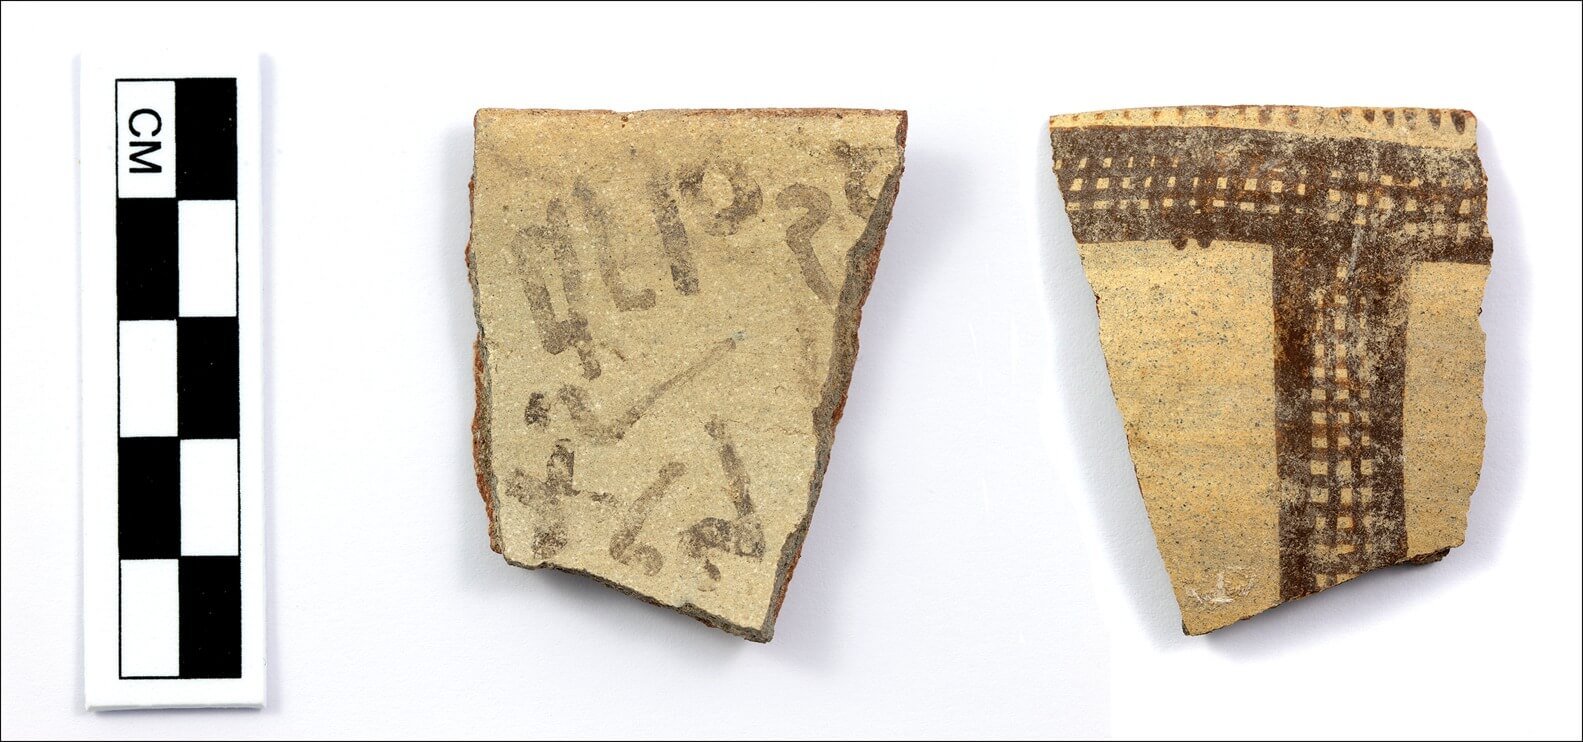 Самые первые письменные документы. Горлышко керамической чаши с древними надписями. Фото.